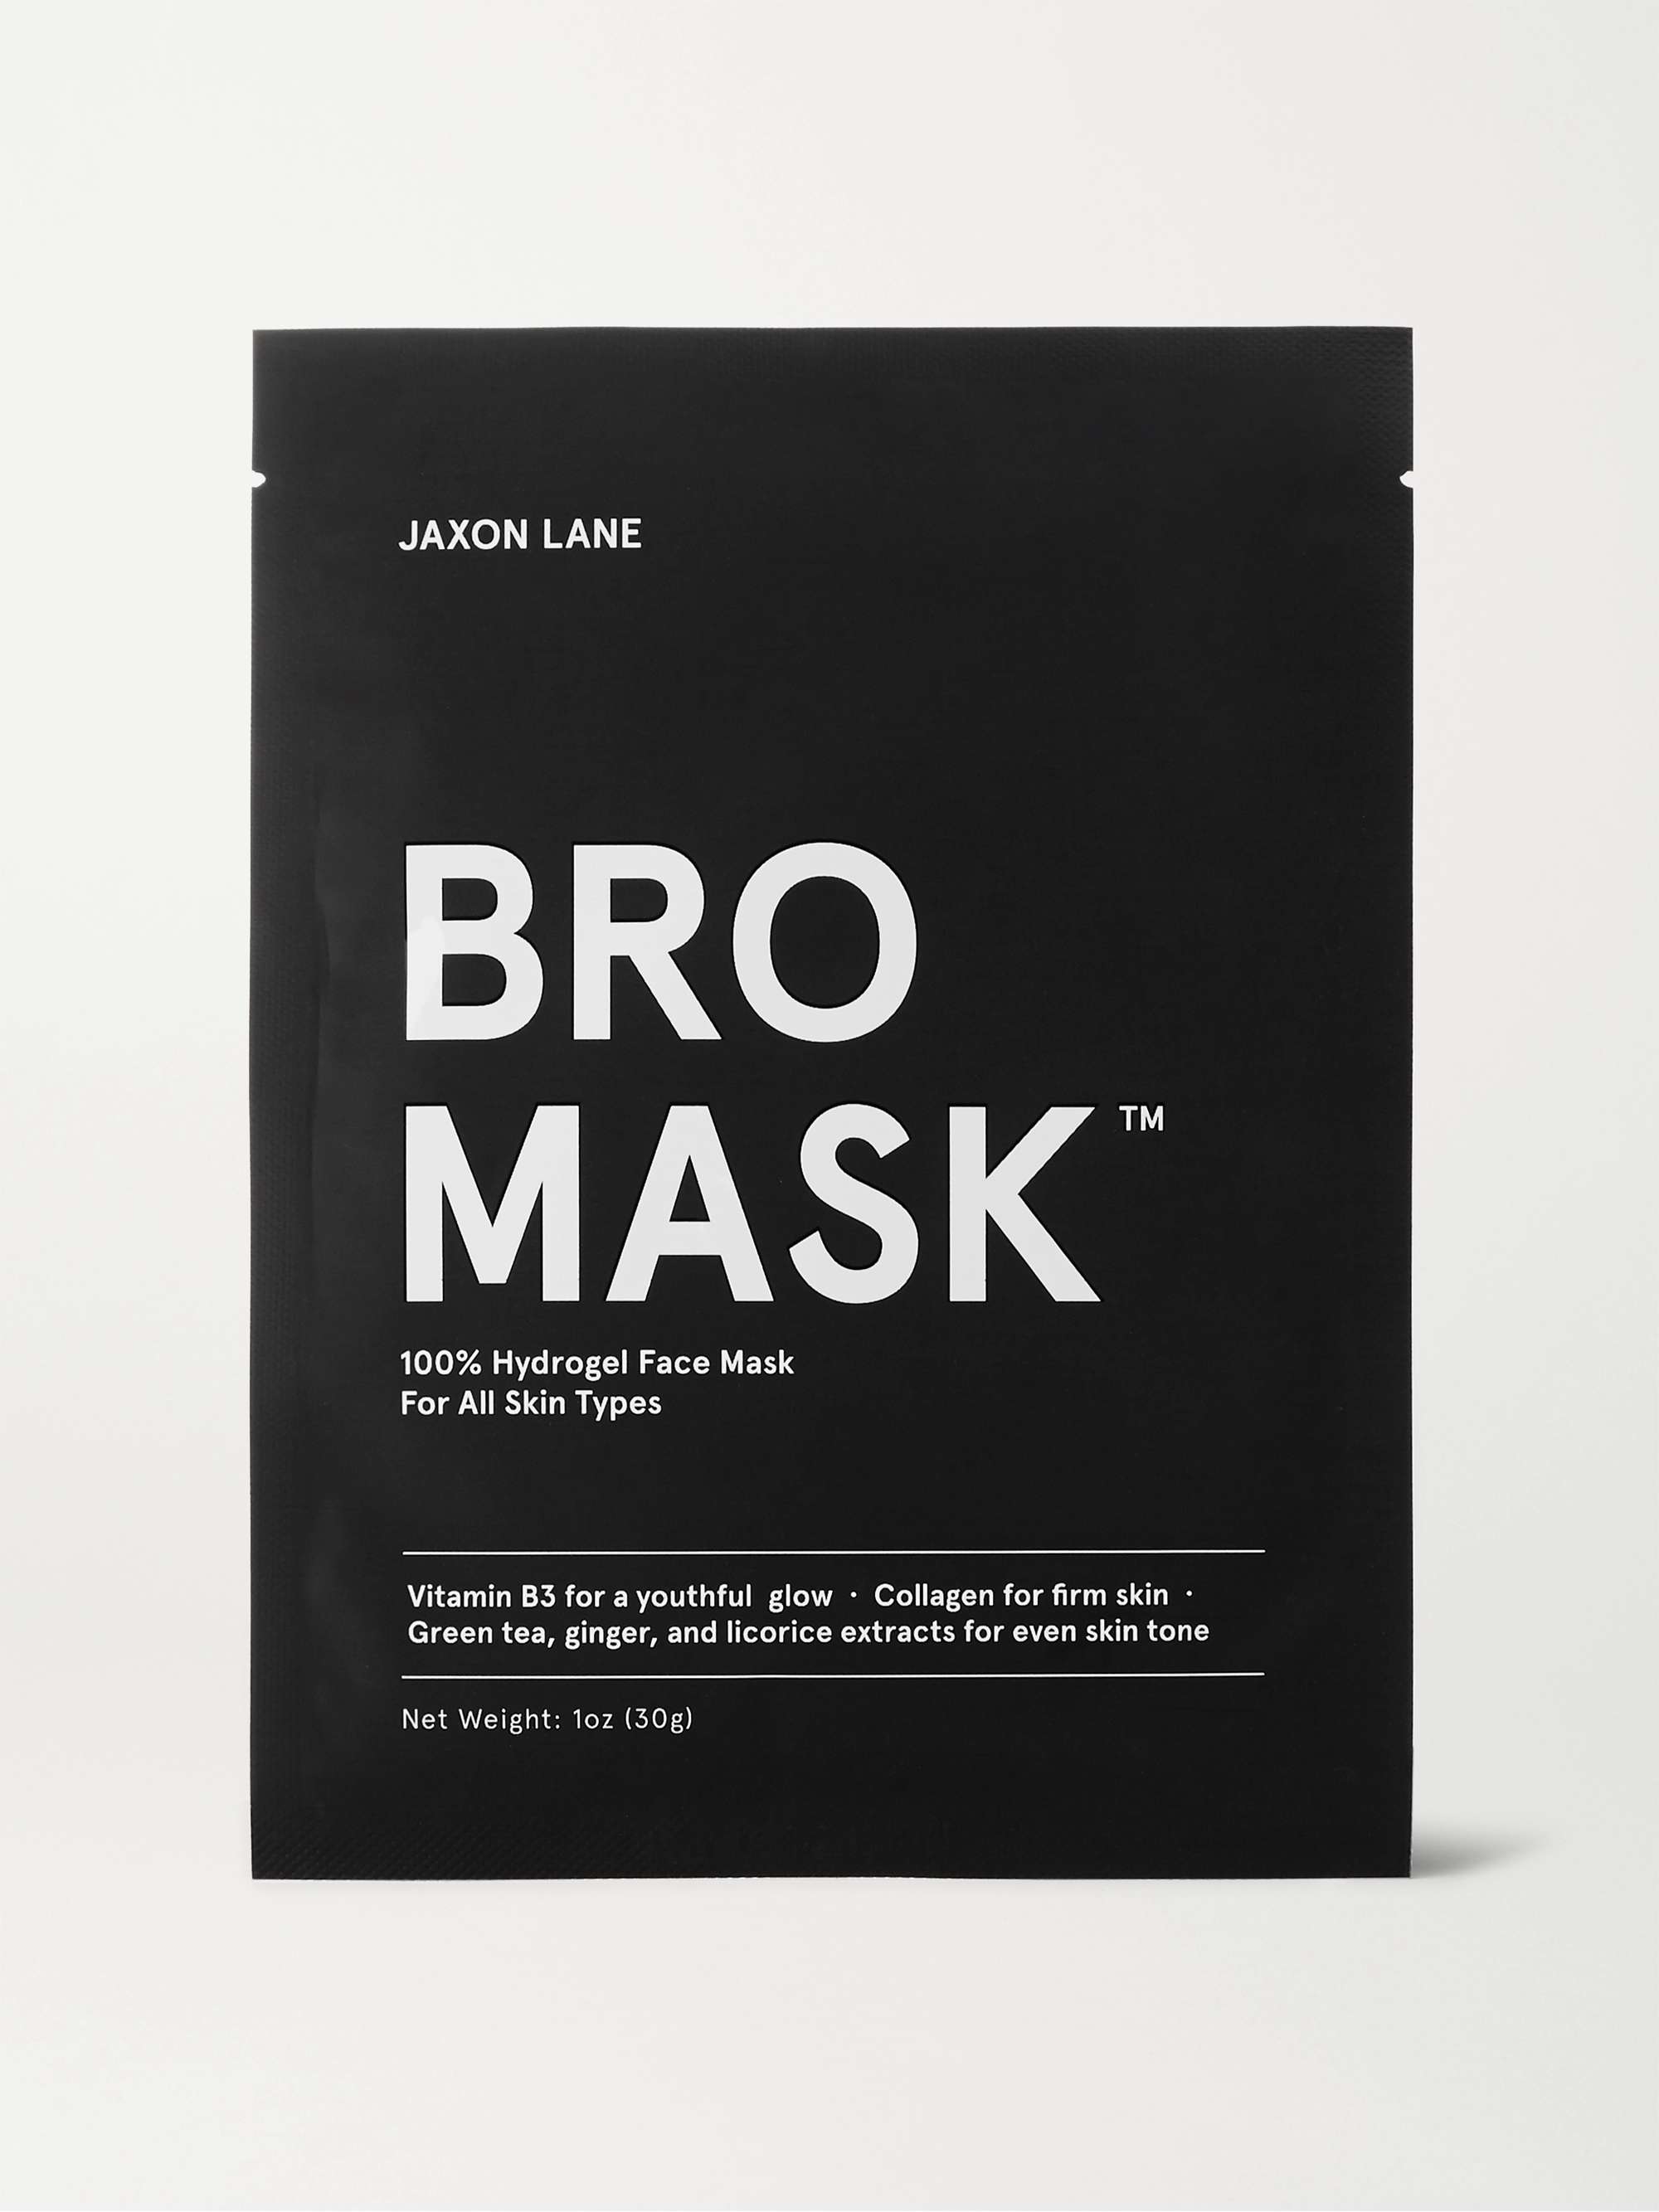 JAXON LANE Bro Mask Cooling Eye Gels, 6 x 3ml